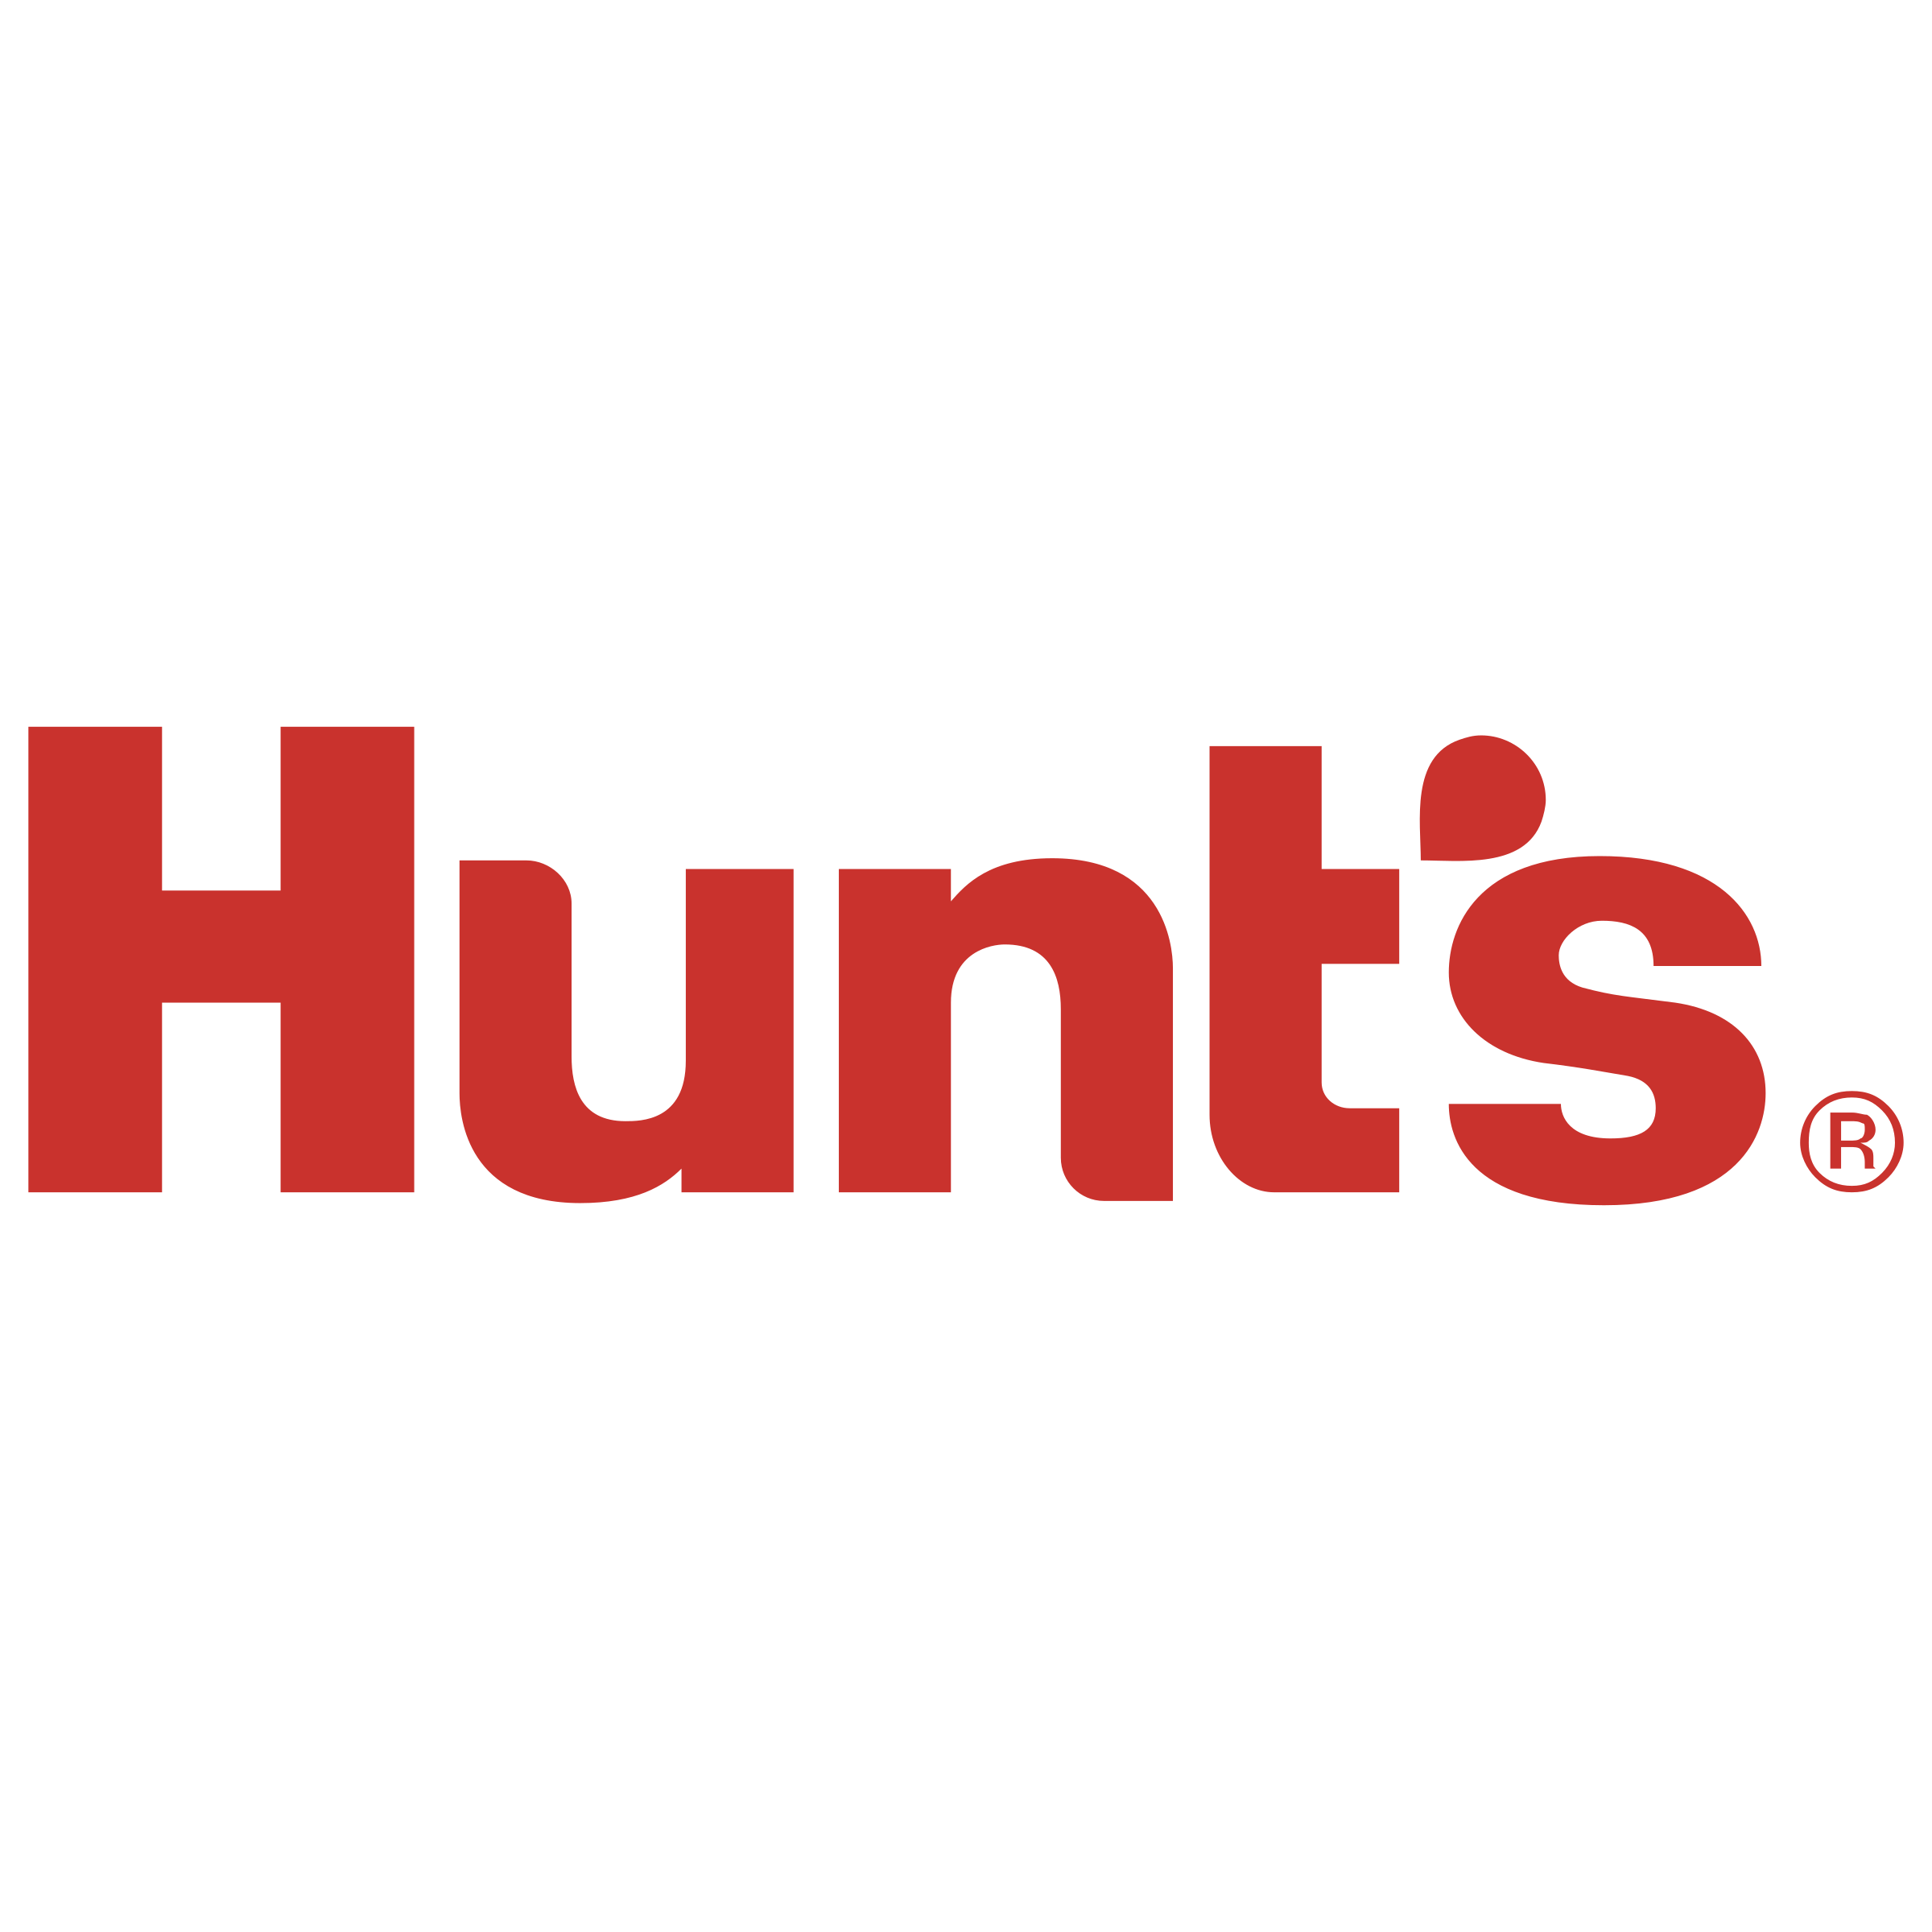 Hunt's Logo - Hunt's Logo PNG Transparent & SVG Vector - Freebie Supply